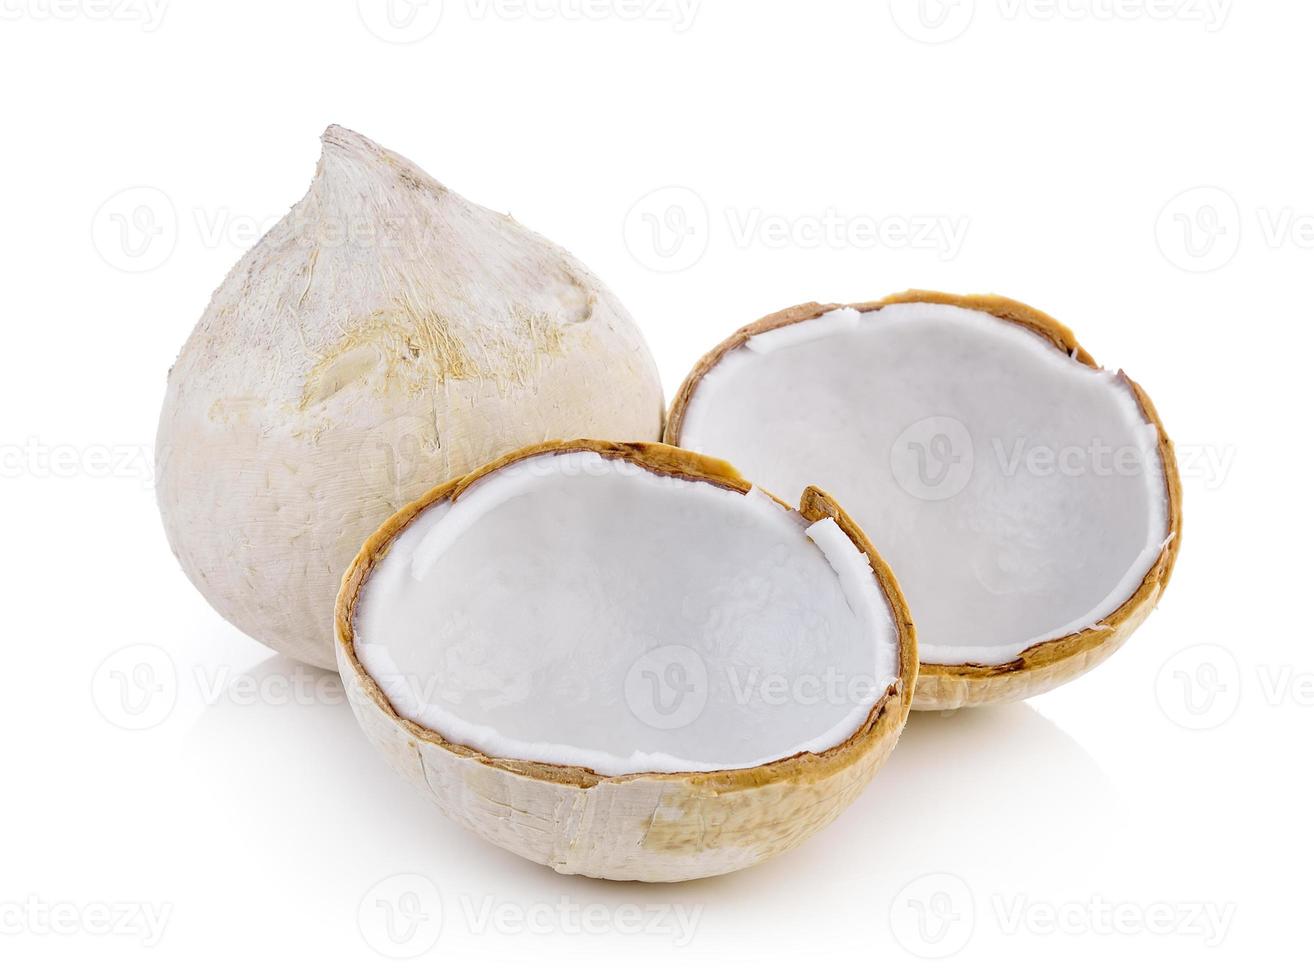 kook kokosnoot op witte achtergrond foto